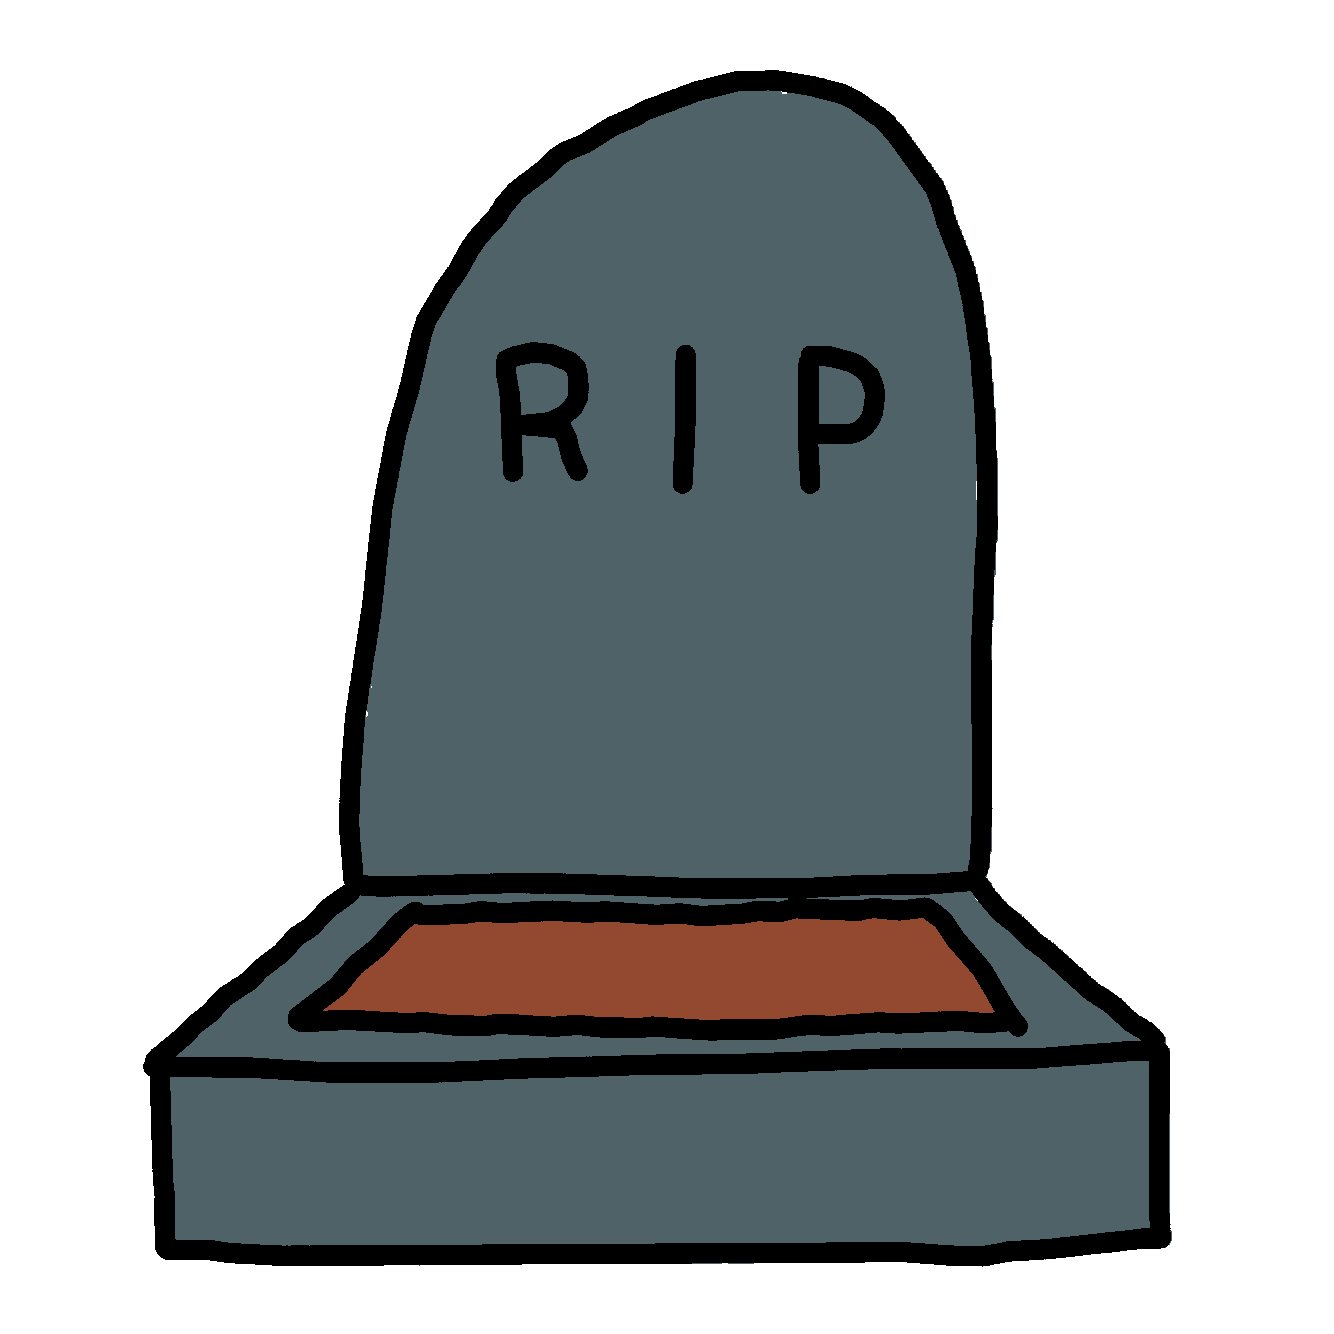 GIF of a gravestone